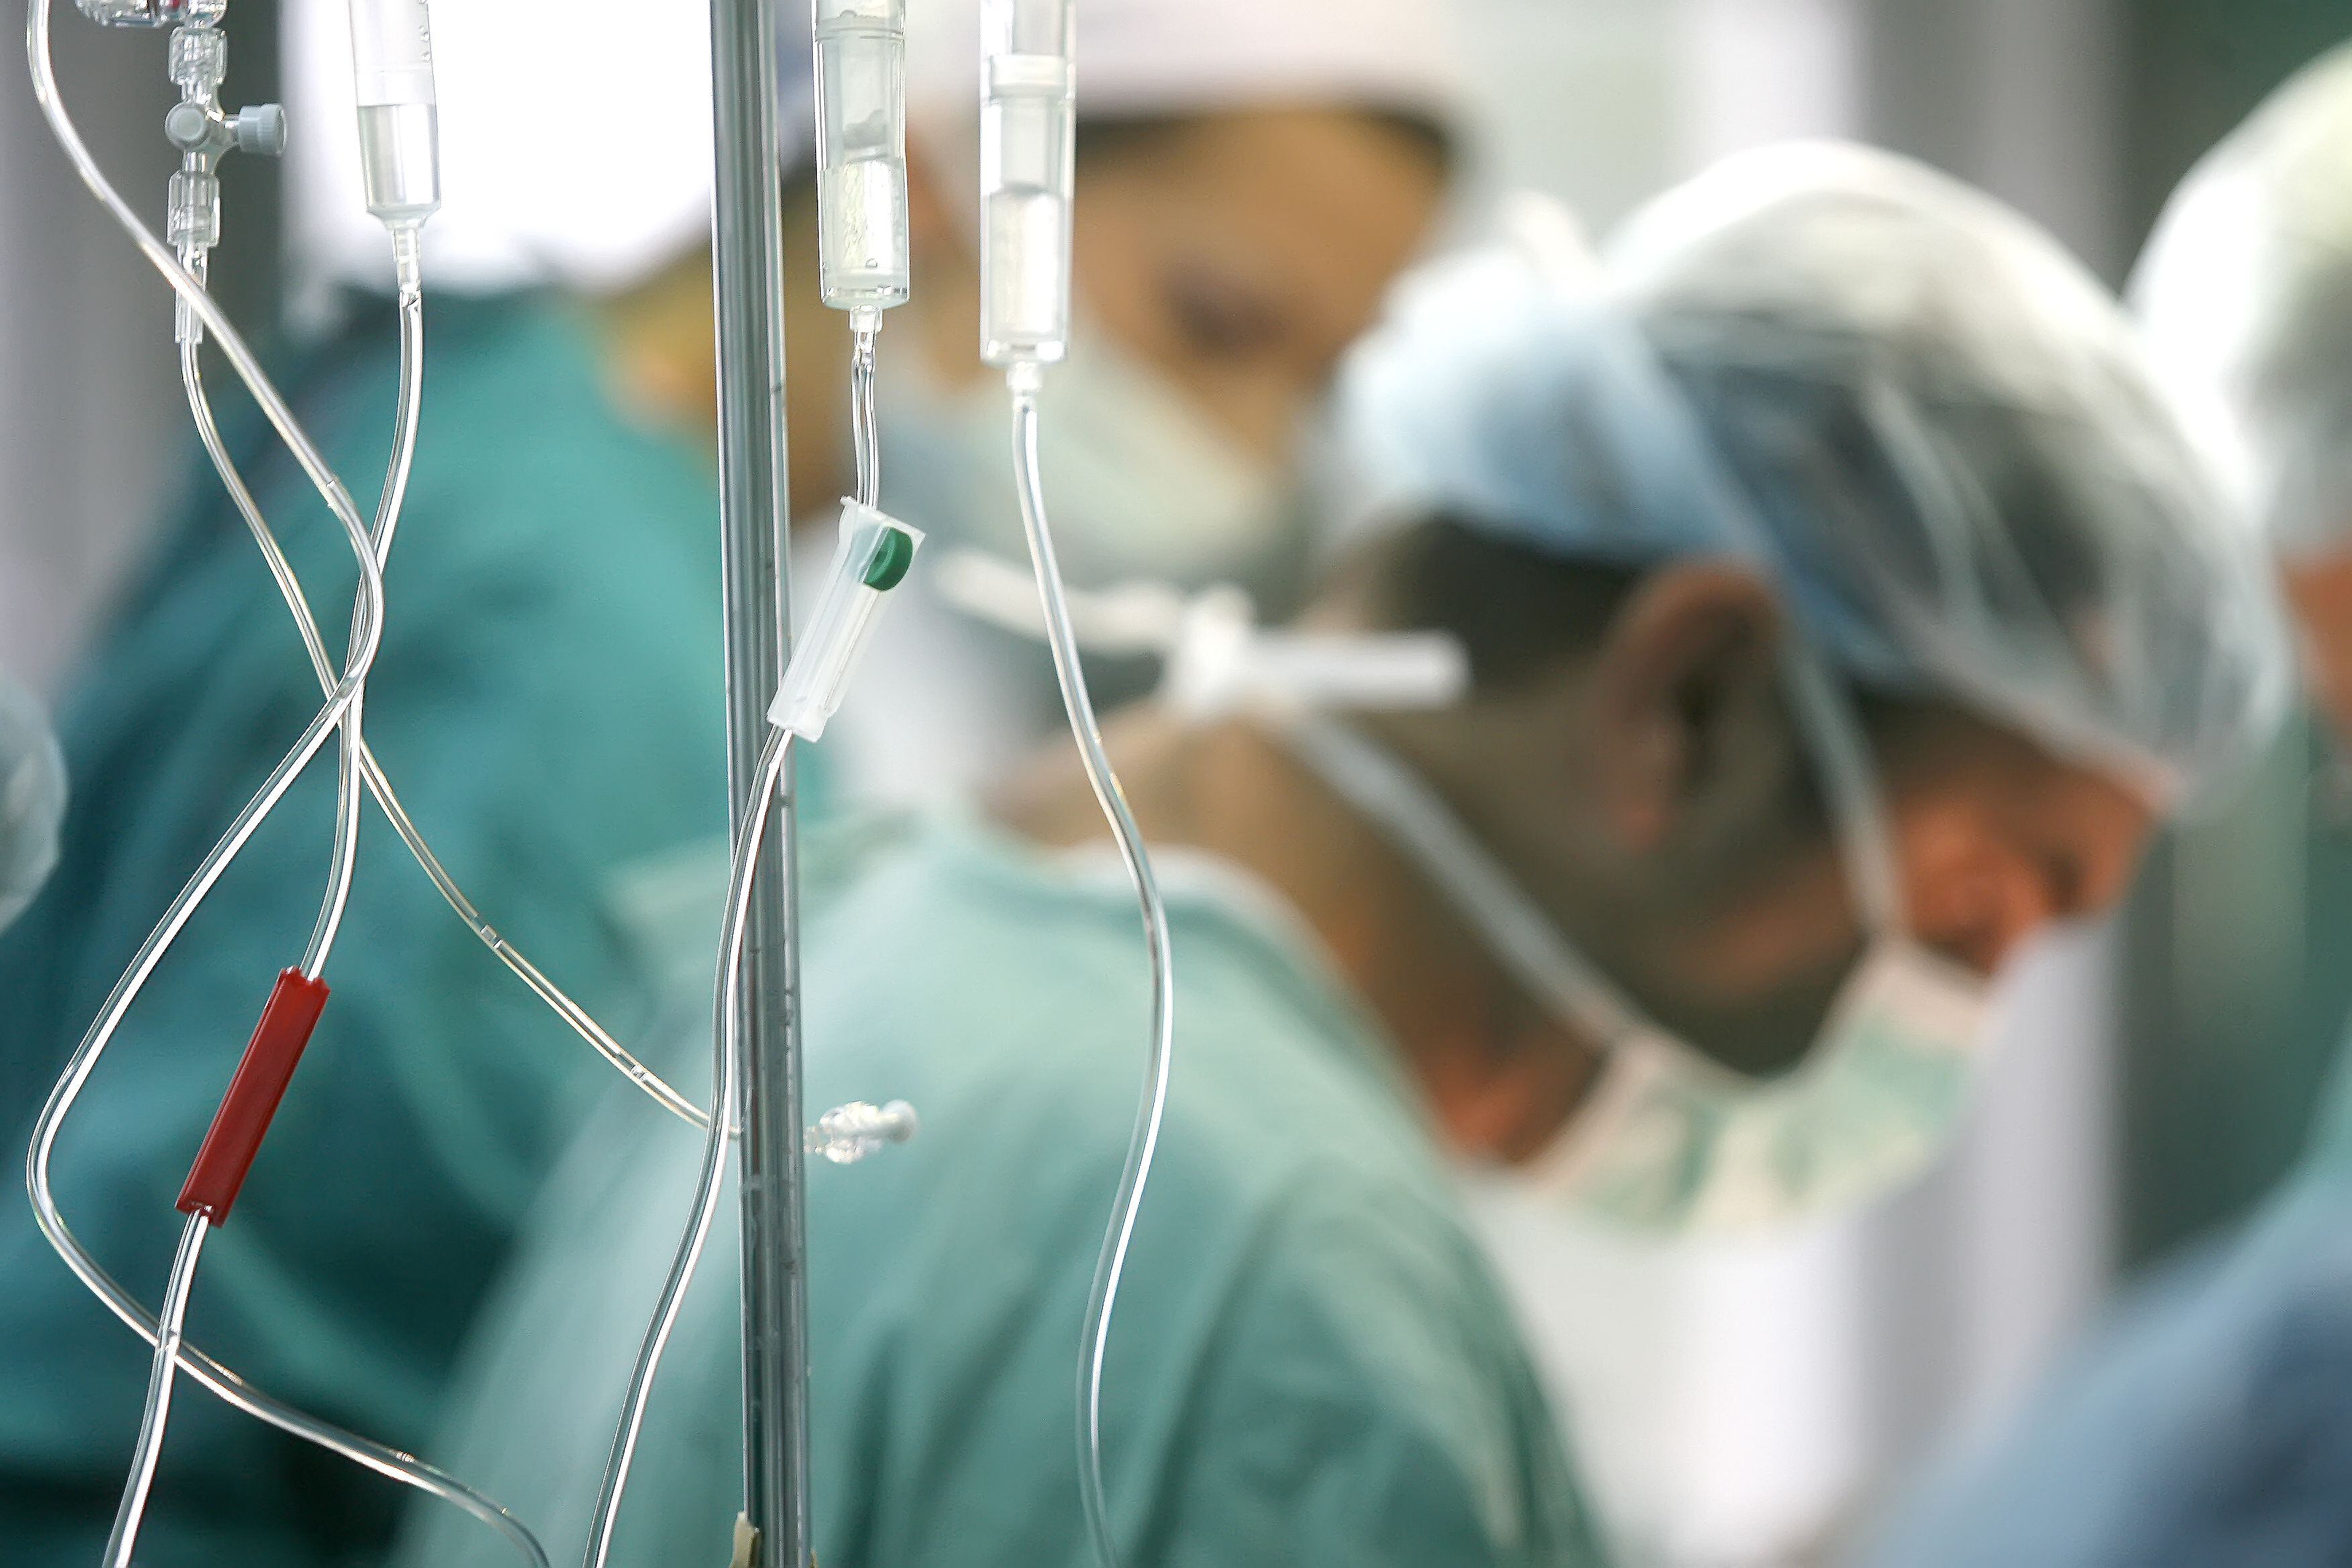 Órganos para trasplantes se desperdician debido a protesta de médicos especialistas, denuncia CCSS